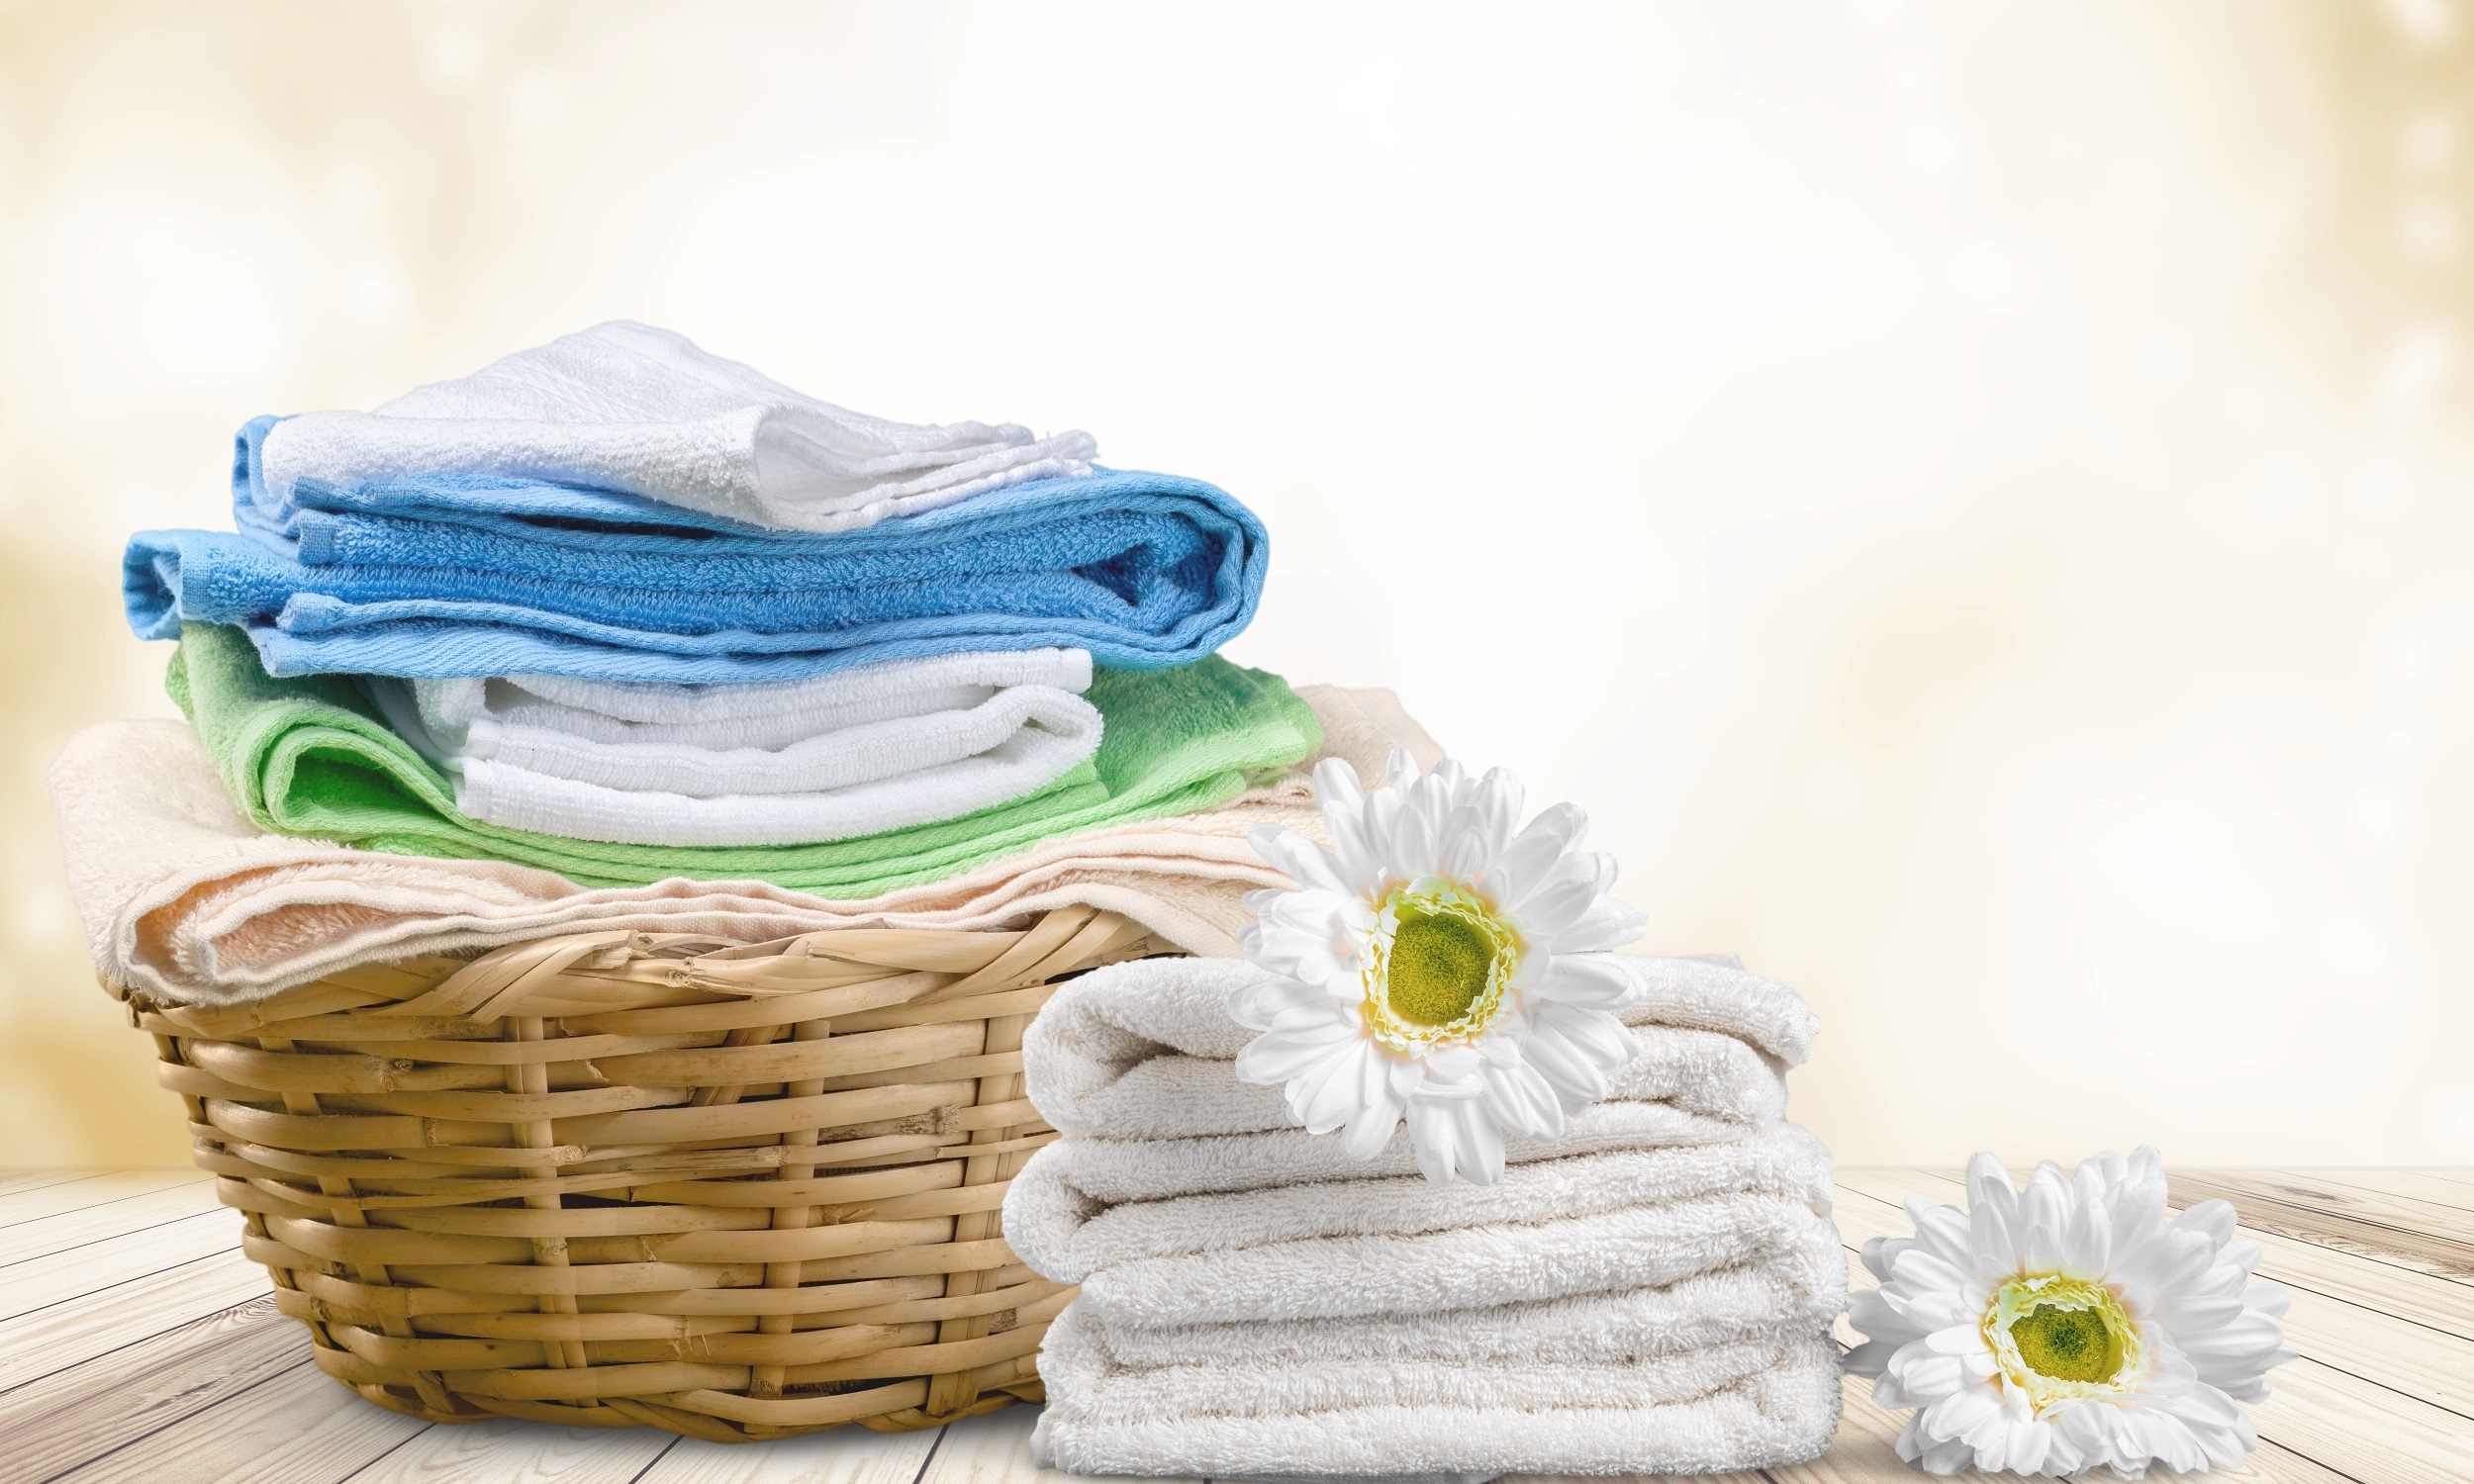 Inilah Cara Mencuci Baju Agar Wangi ala Laundry